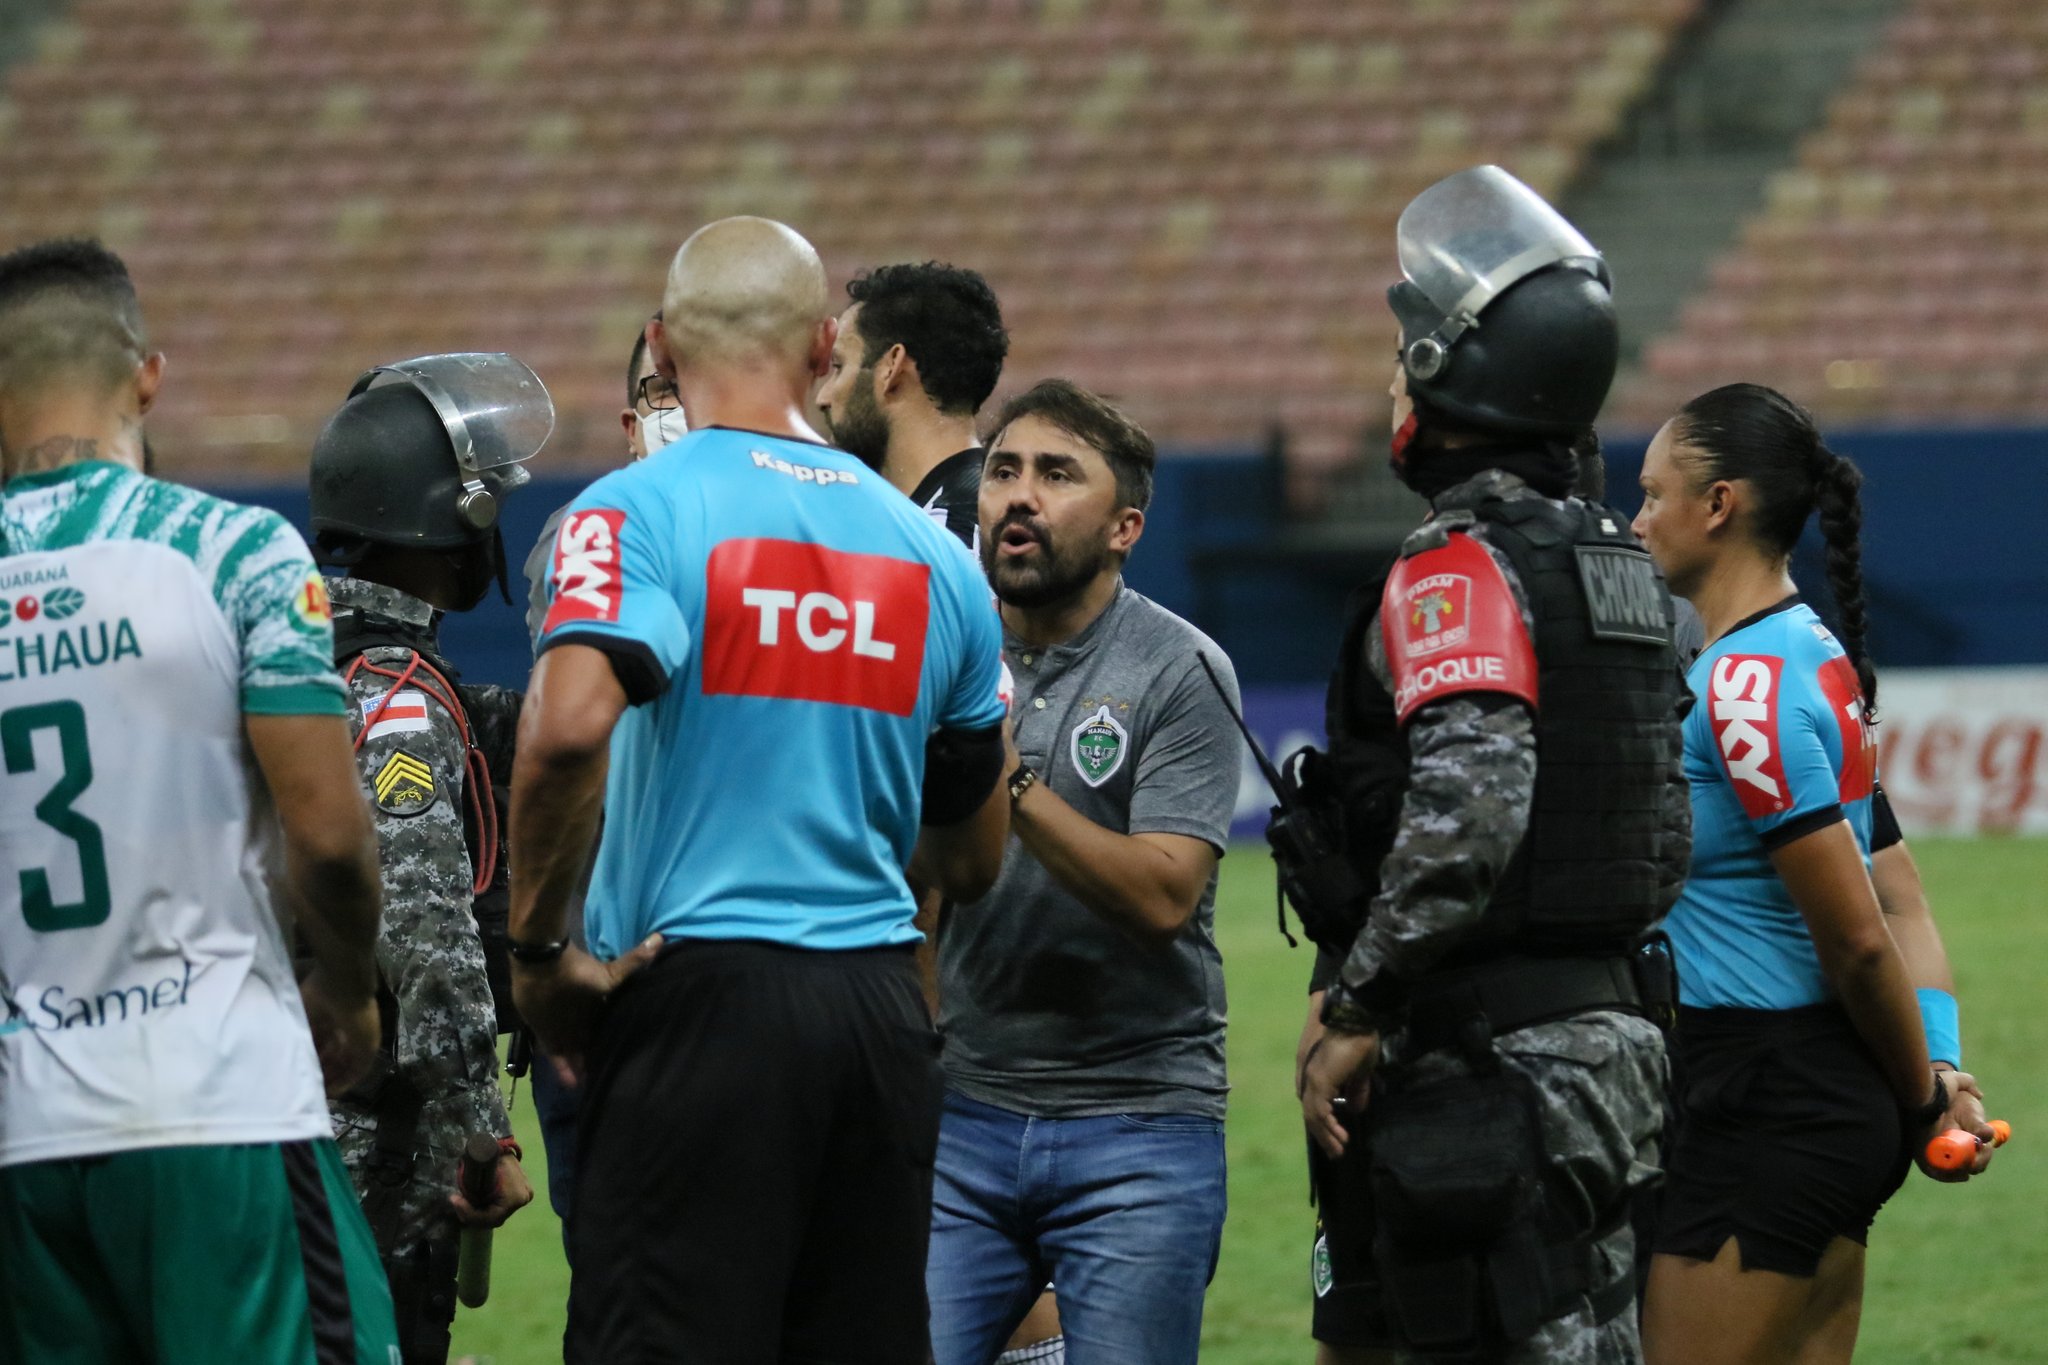 10 minutos de agregado, agresiones al árbitro y policía lanza gas pimienta a jugadores: ¡Locura en Brasil!